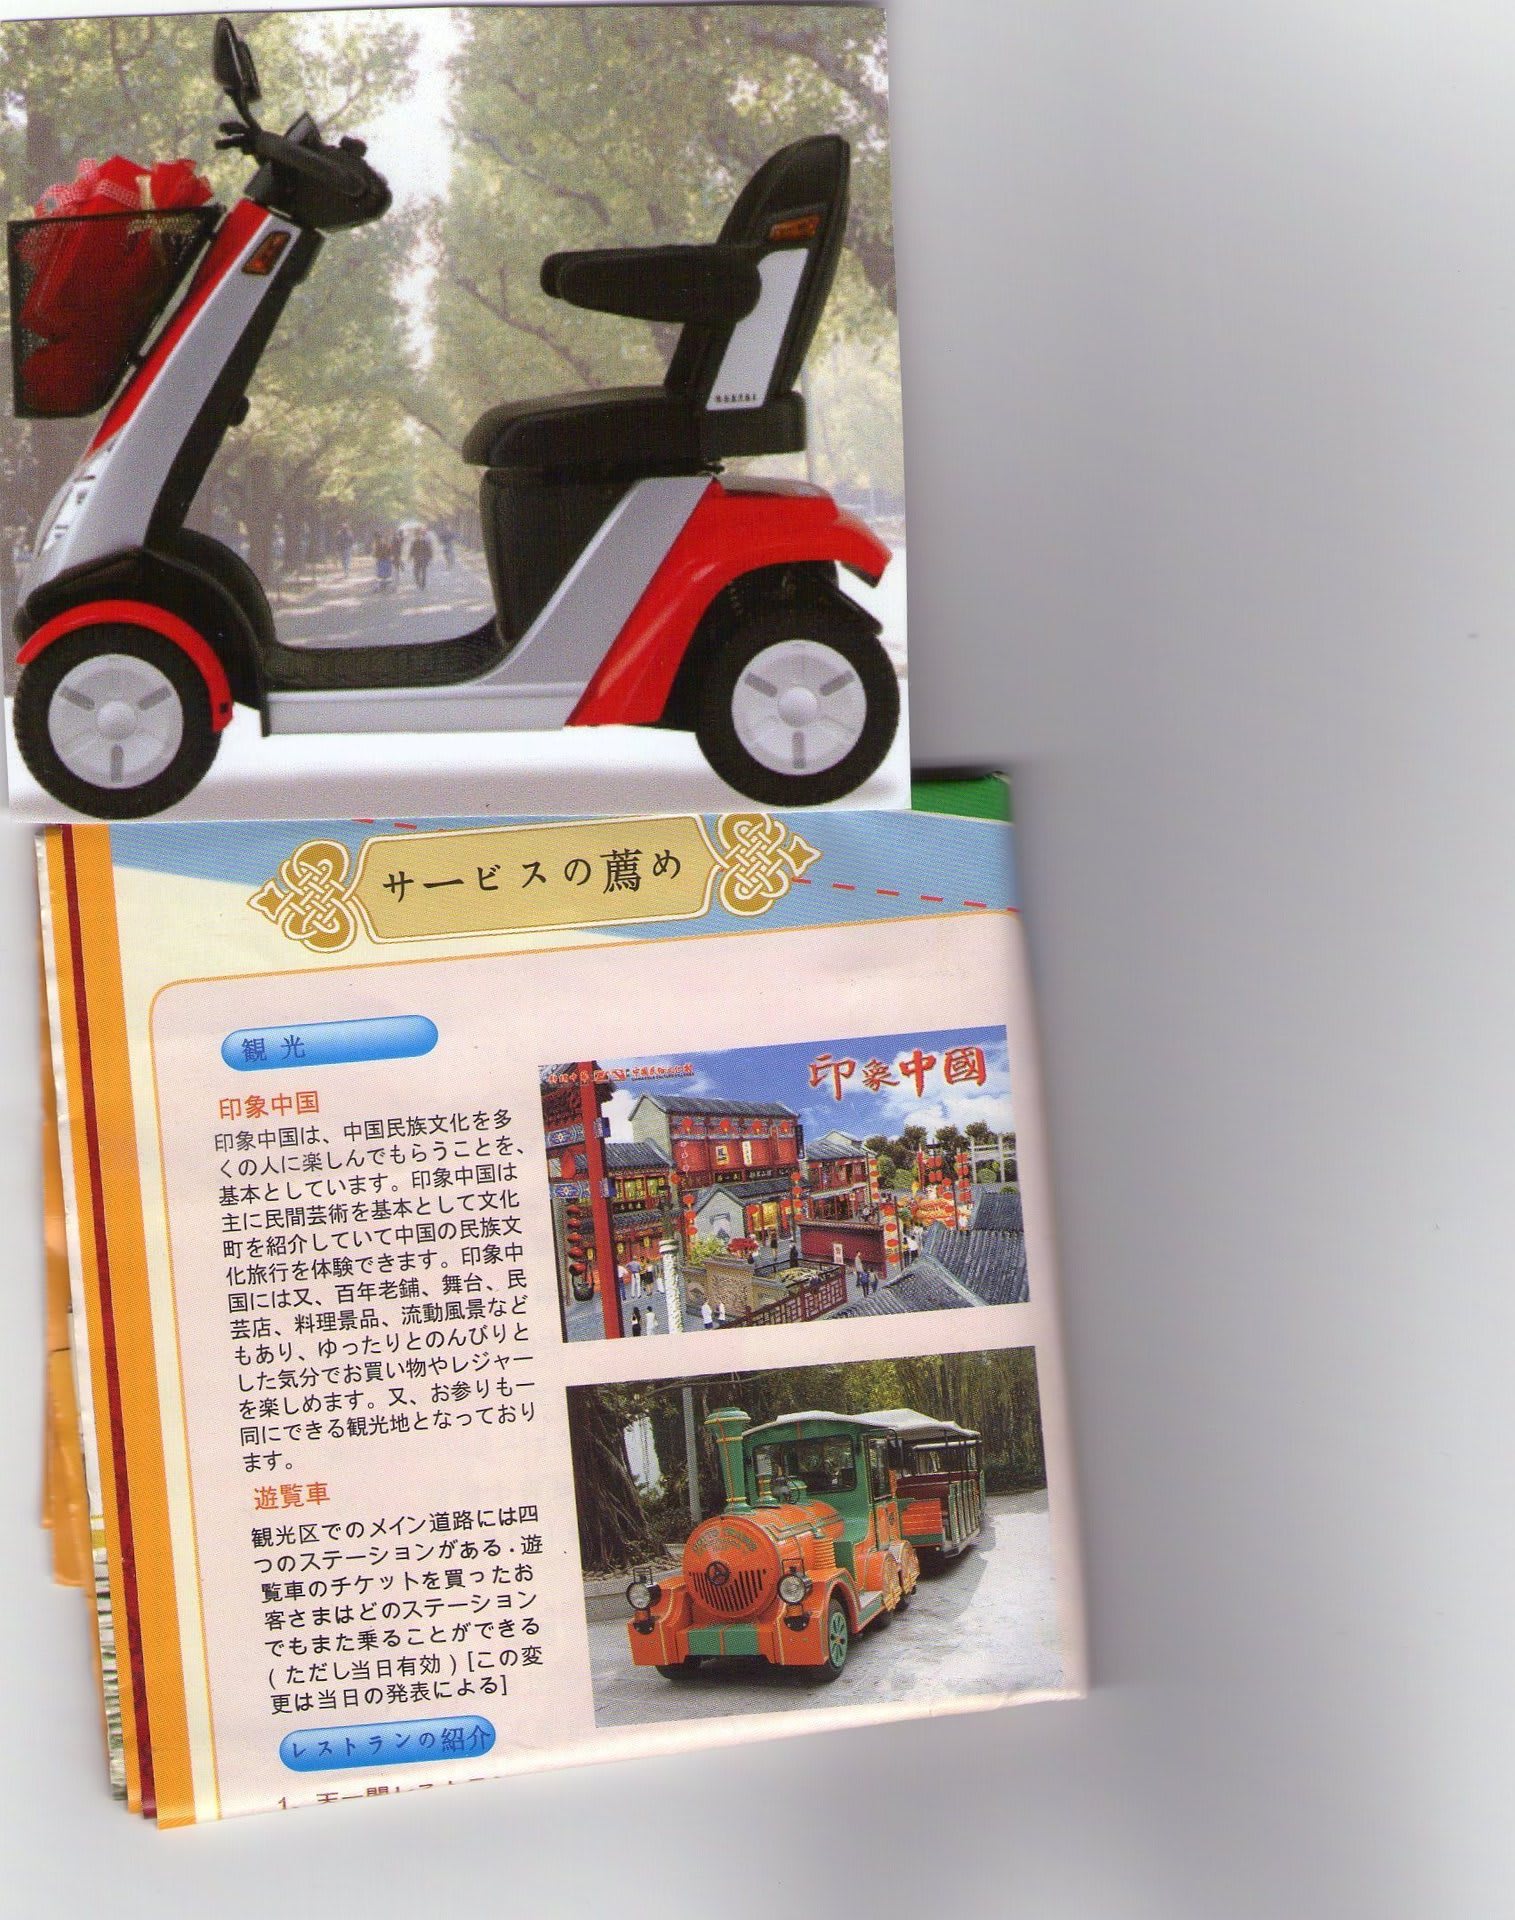 深せん観光の小人国で利用した使用料８０元電動カートは日本でいう歩行補助具でなく園内何度利用可の遊覧車 天命を知る齢に成りながらその命を果たせなかった男の人生懺悔録